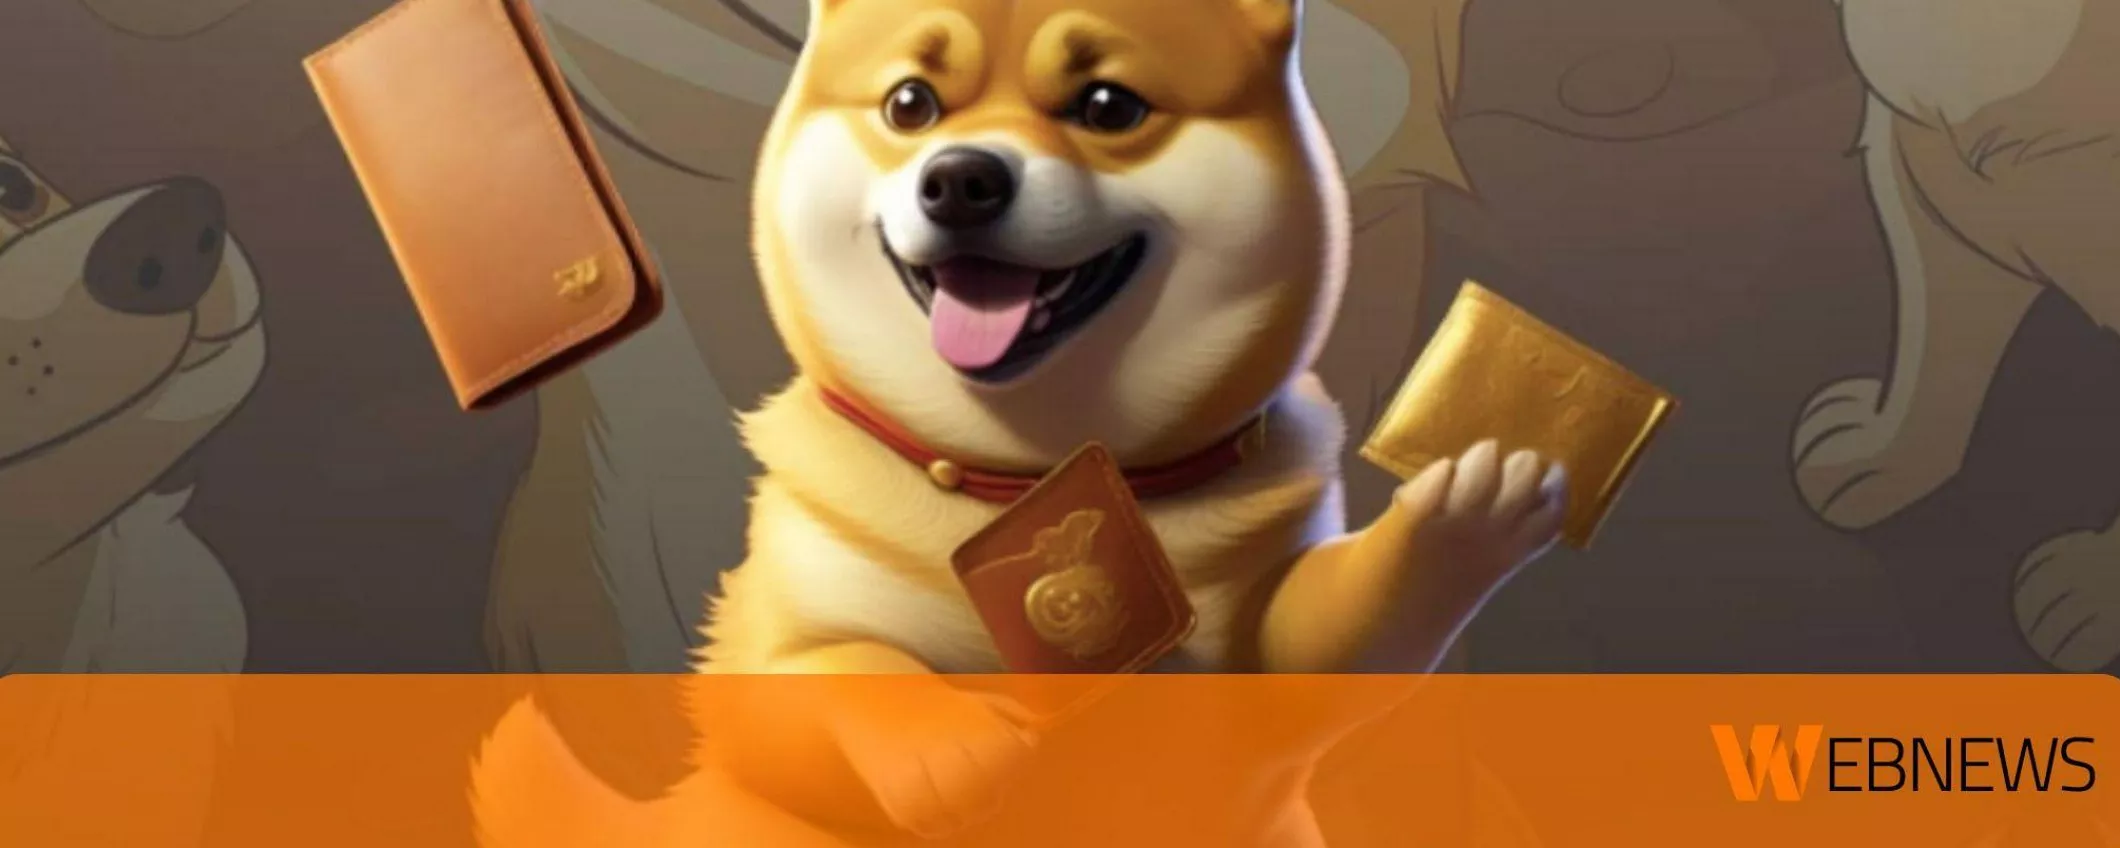 La nuova meme coin Dogecoin20 aumenta del 140% mentre i crypto analisti puntano sull’esplosione di Dogeverse token